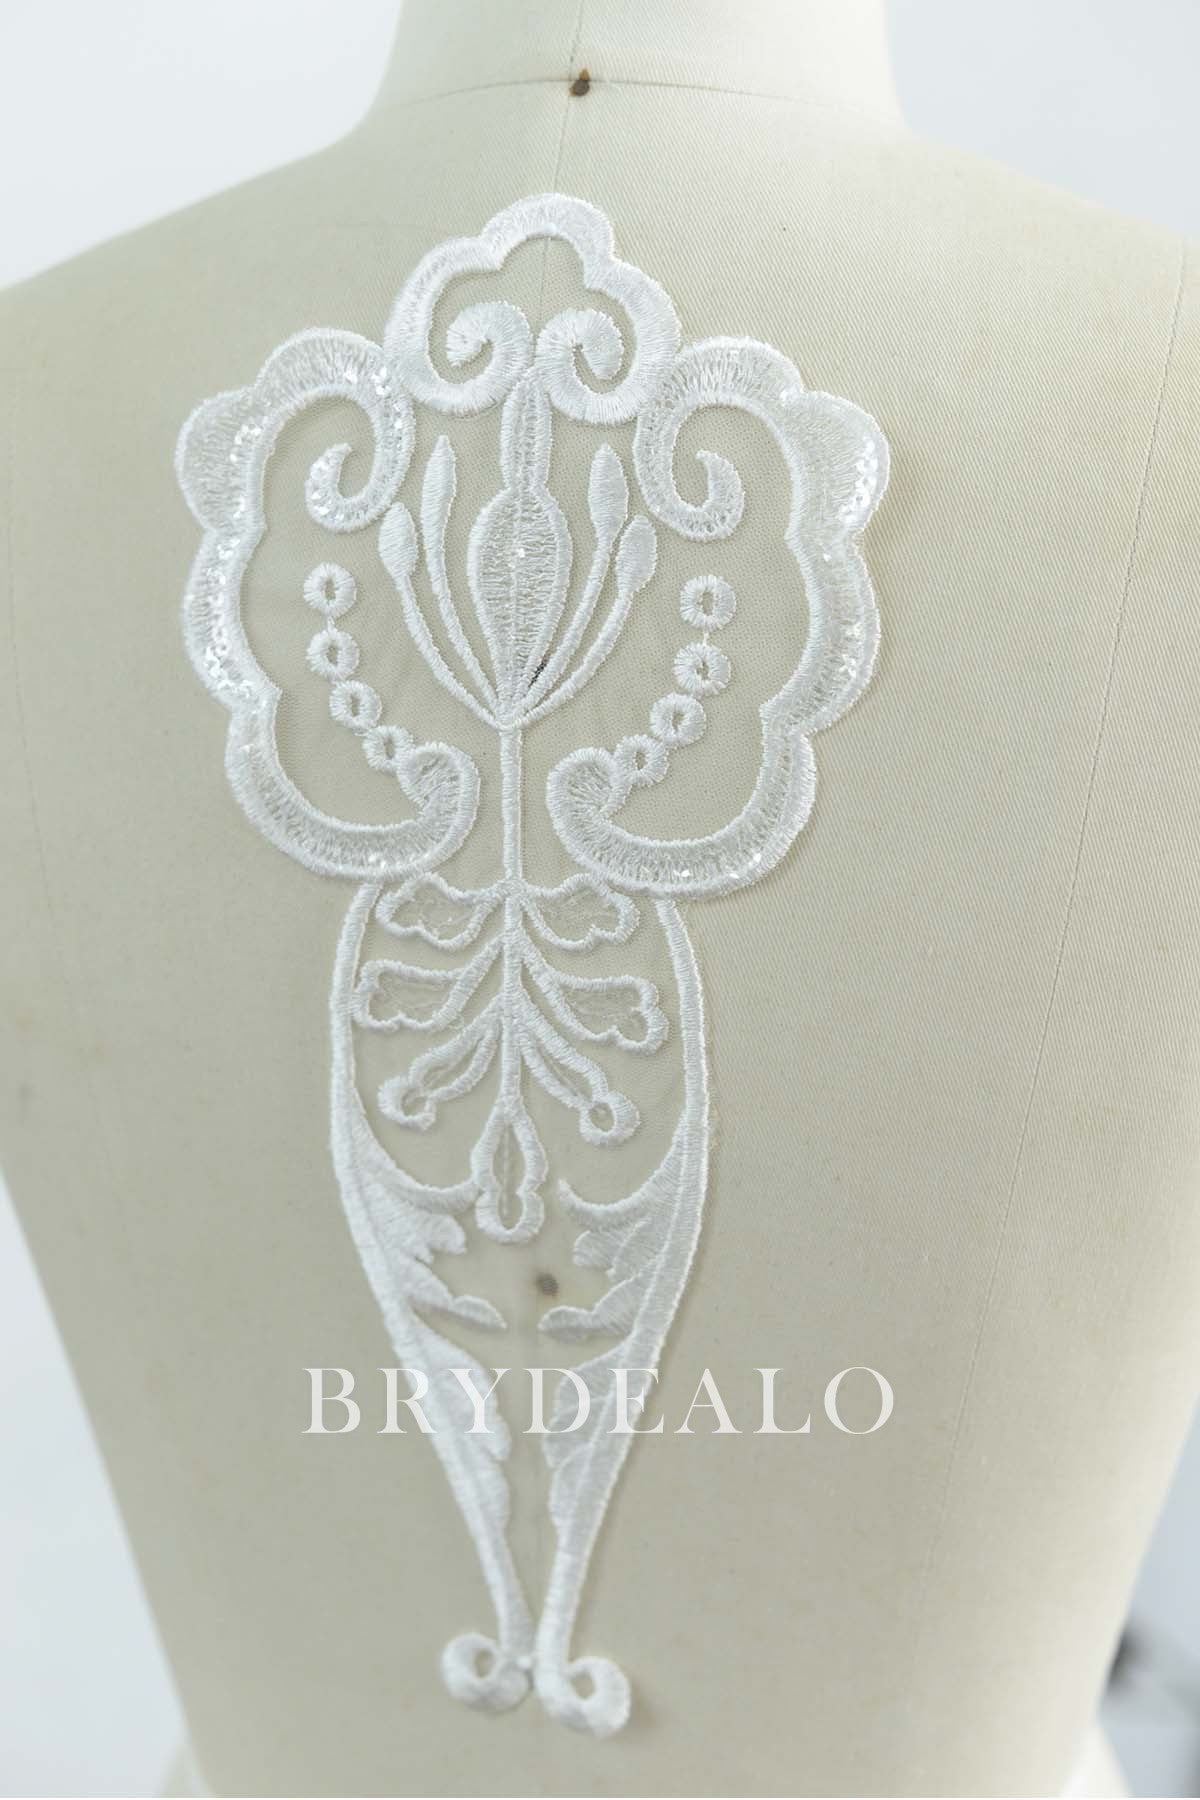  Symmetrical Bridal Lace Appliqué